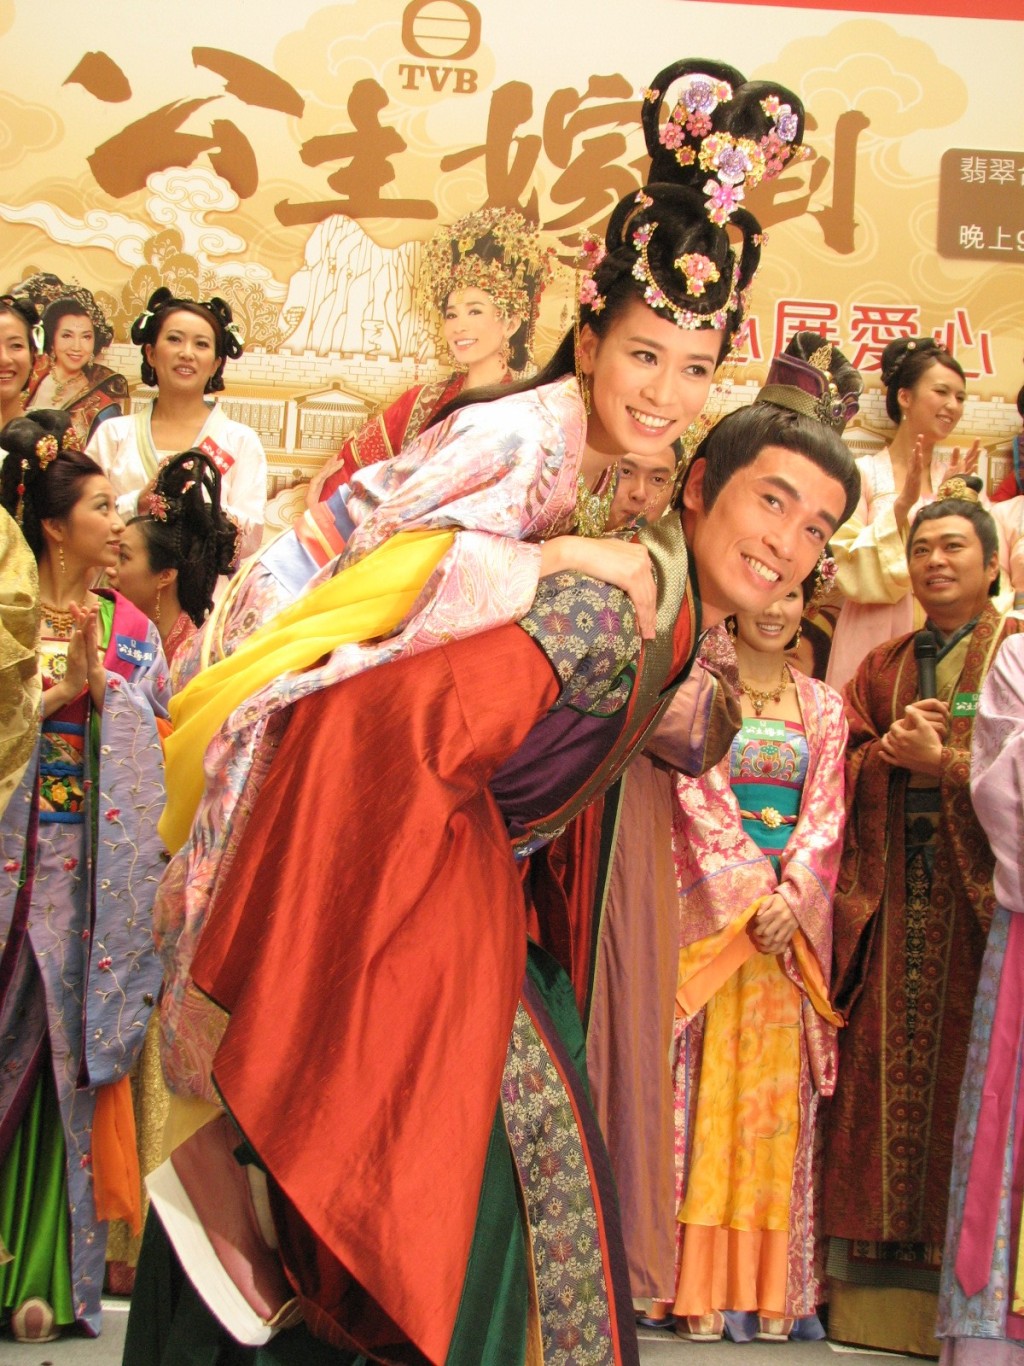 TVB趁陈豪与佘诗曼热度未减，安排深夜重播陈豪与佘诗曼主演、2010年播出的剧集《公主嫁到》。